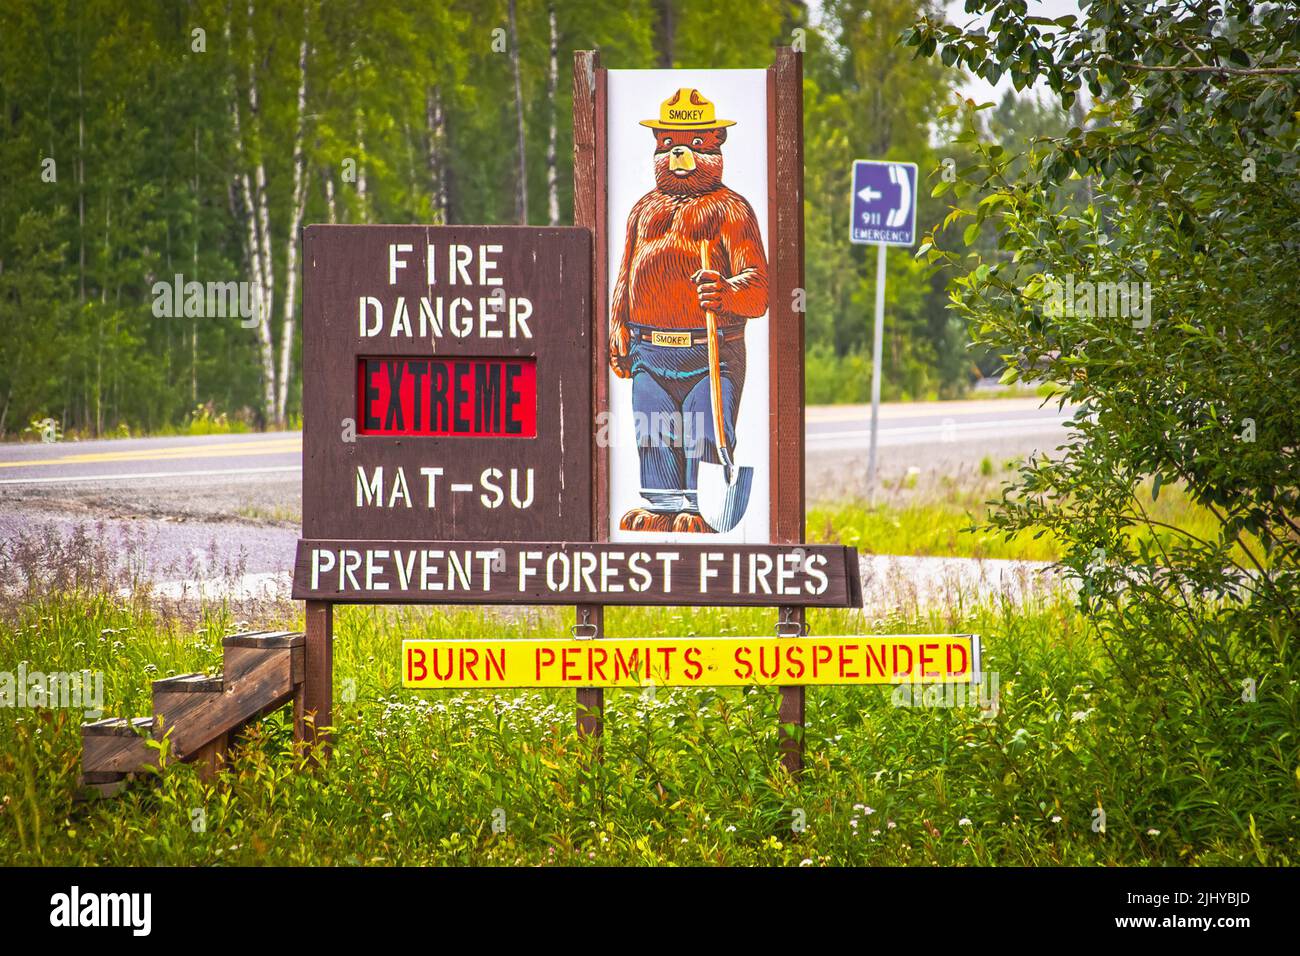 2022 06 26  Mat-su Alaska USA - Smokey Bear - prevenire incendi boschivi accanto all'autostrada dell'Alaska - livello estremo - permessi di combustione sospesi - gradini di legno Foto Stock